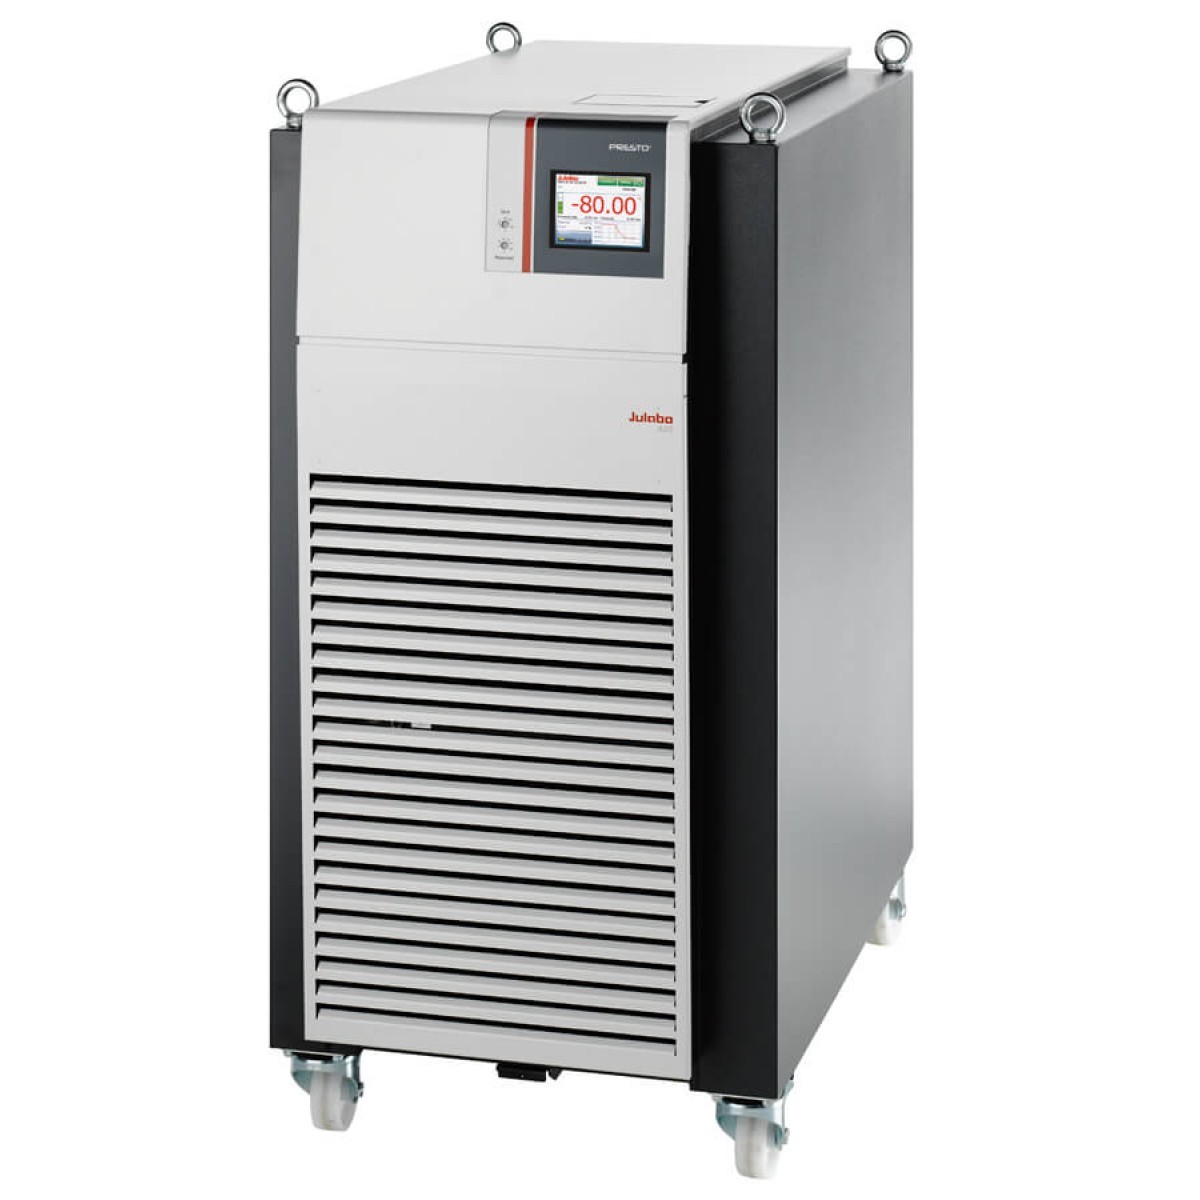 JULABO PRESTO A85系列封闭式高精度动态温度控制系统